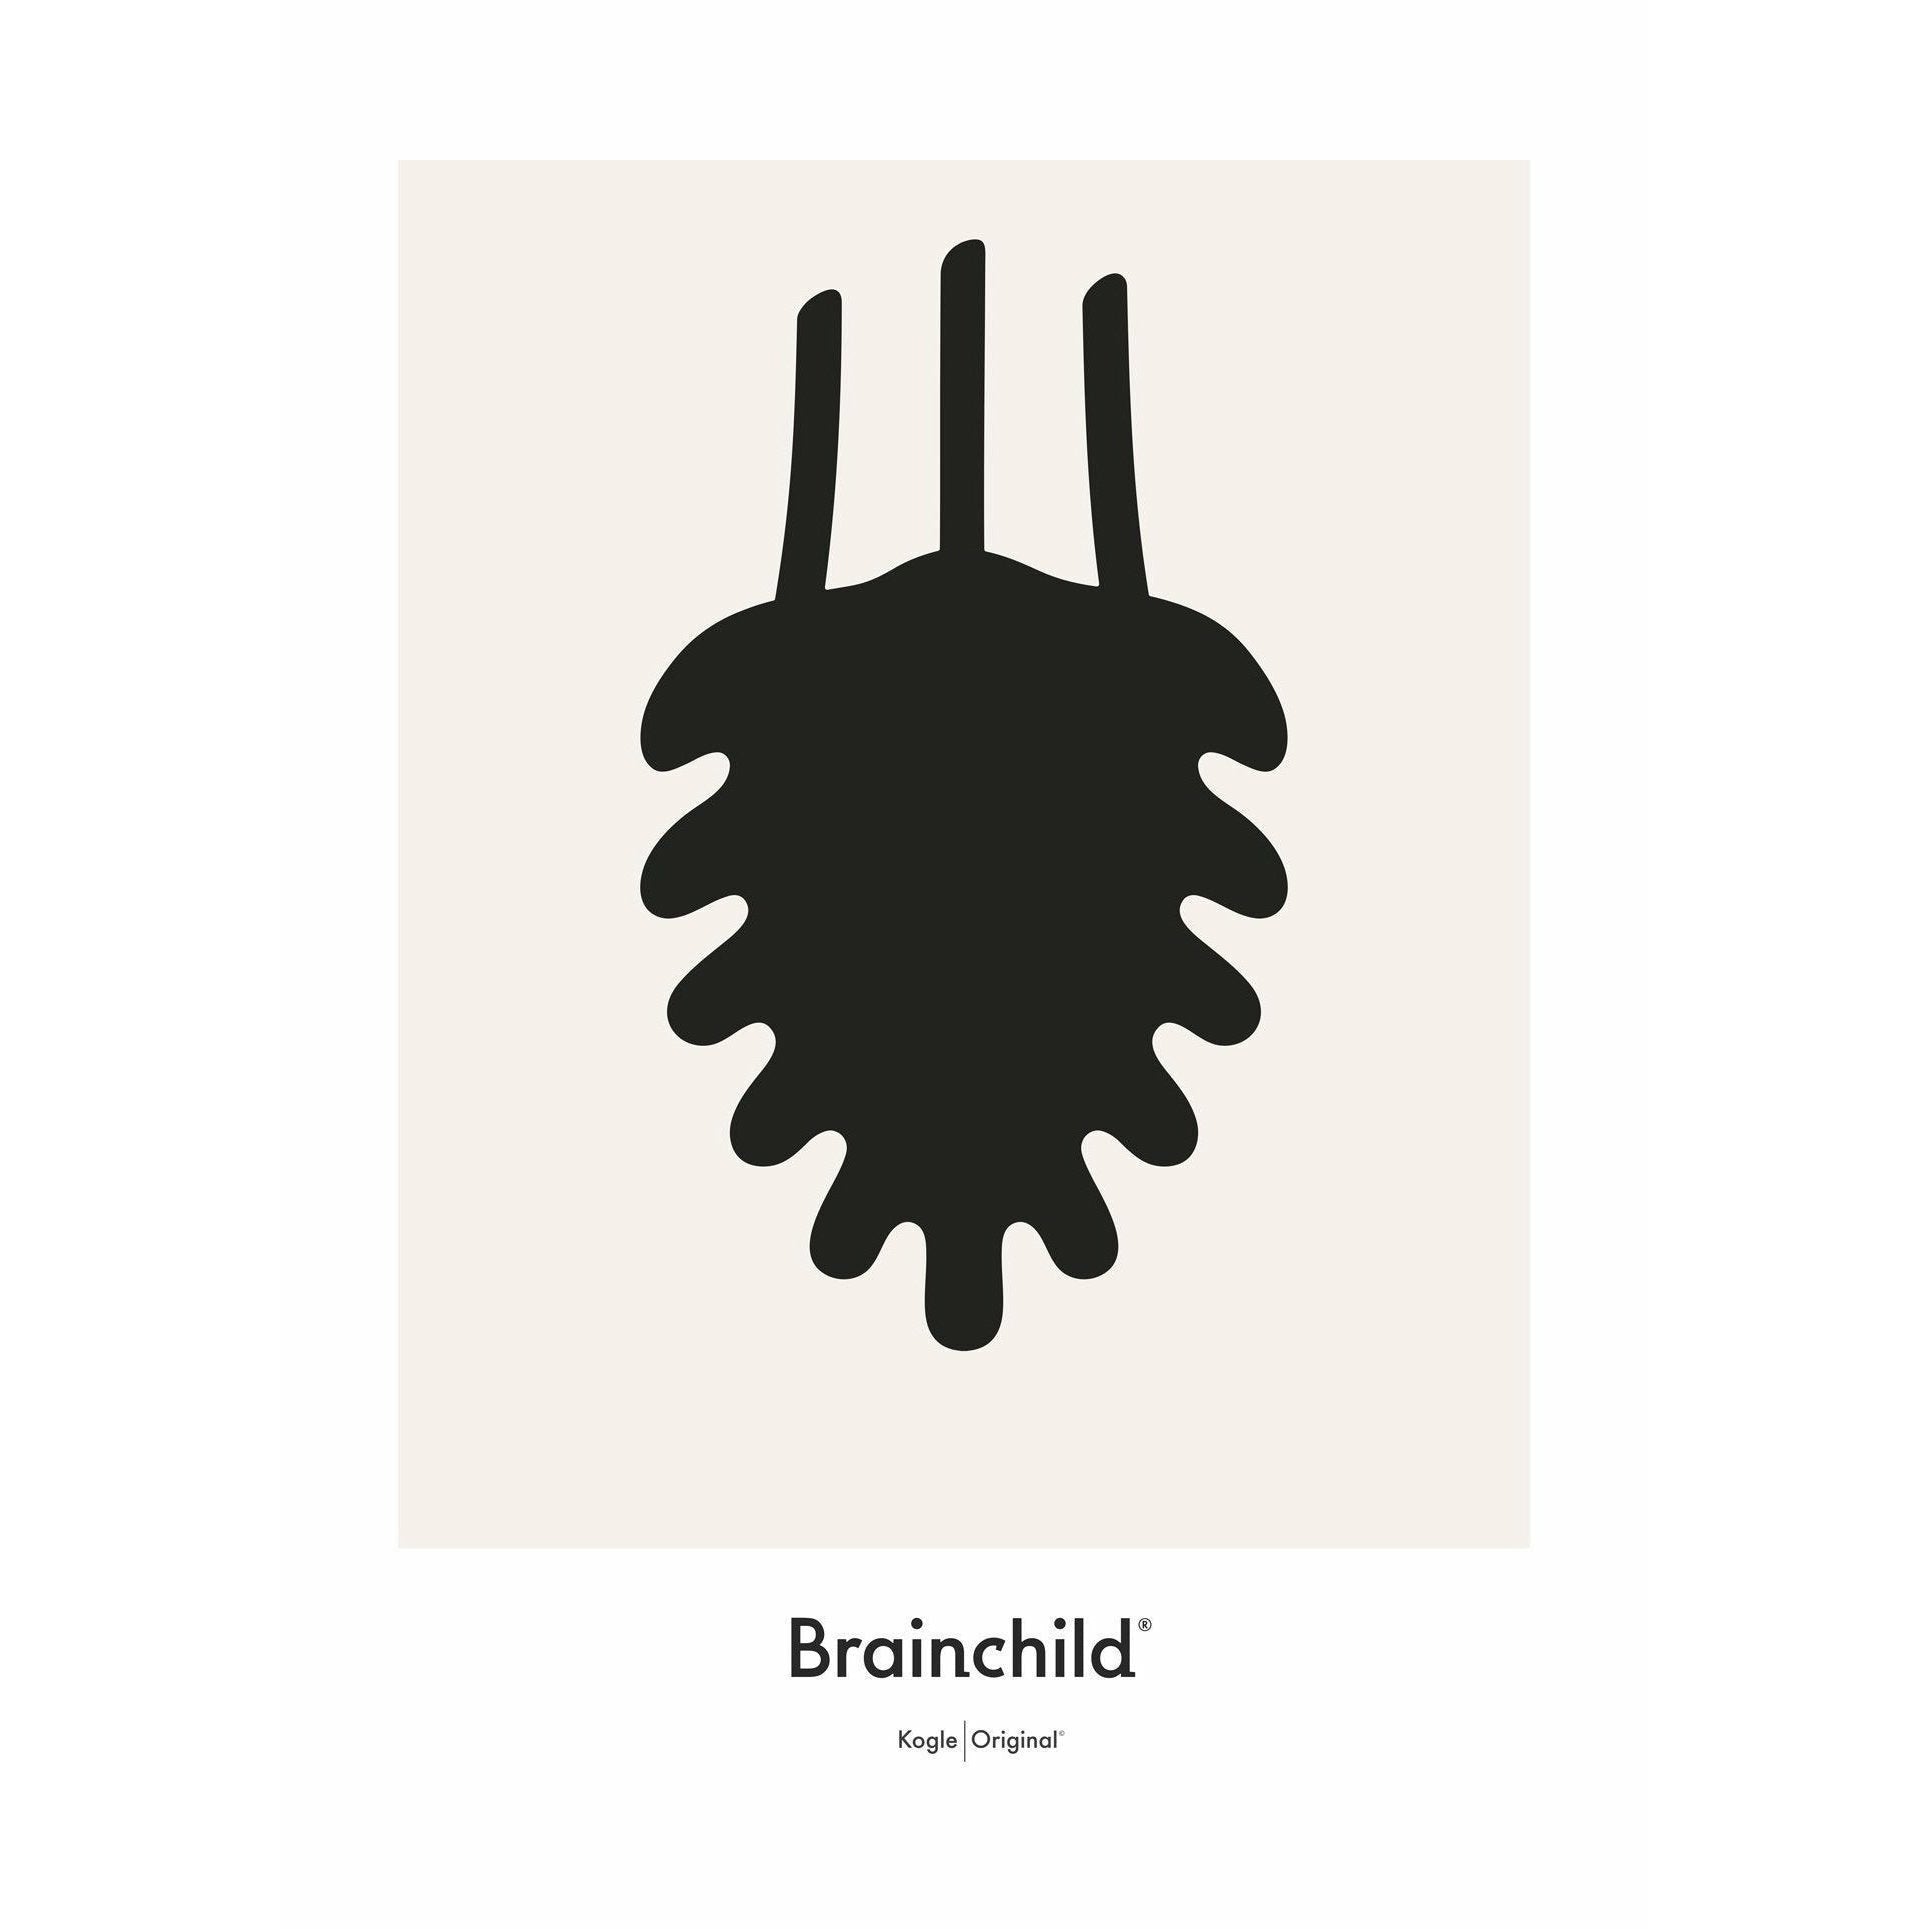 Plakát pro design kužele Brainchild Pine Cone bez rámu 30x40 cm, šedá